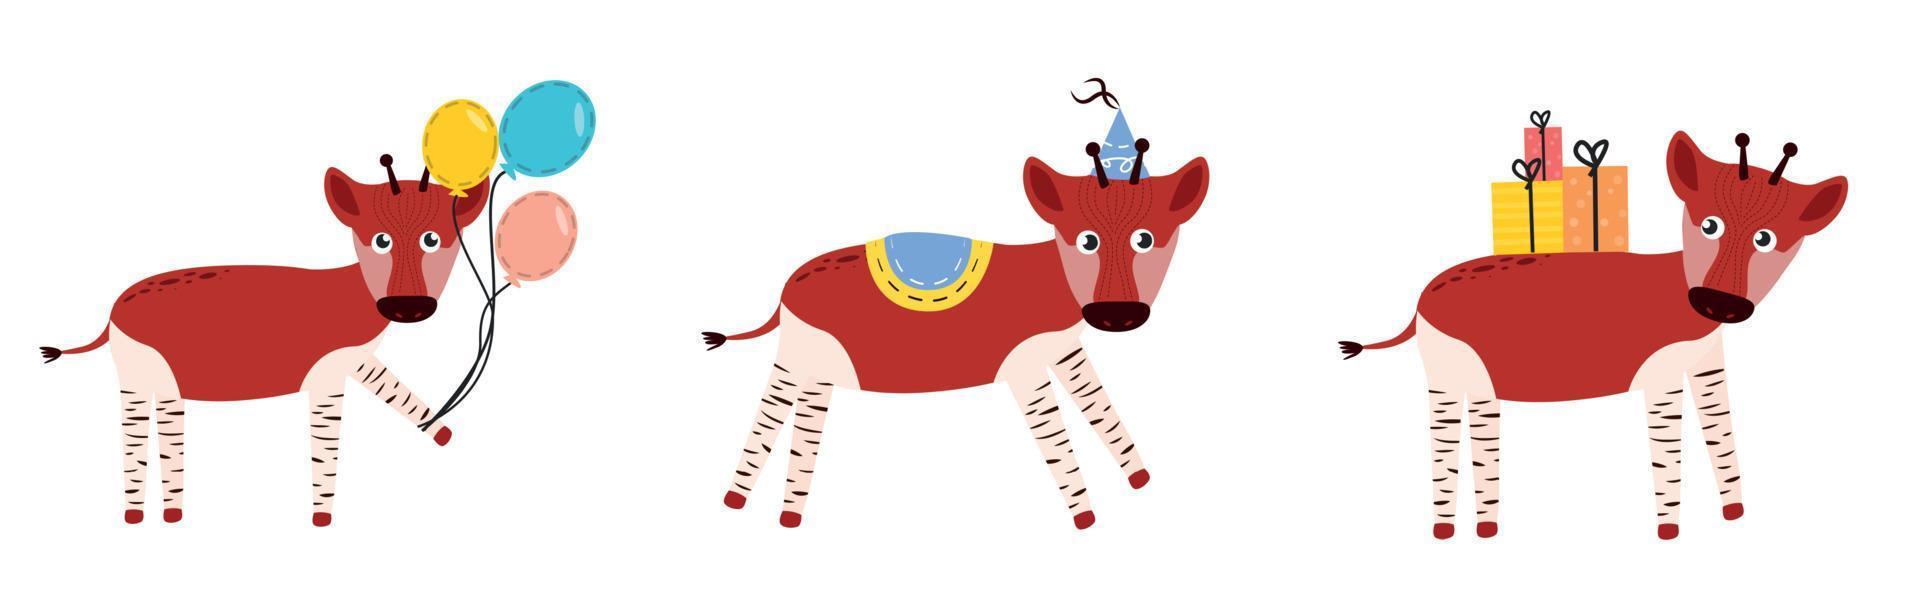 illustrazione di okapi. okapi personaggio vettore